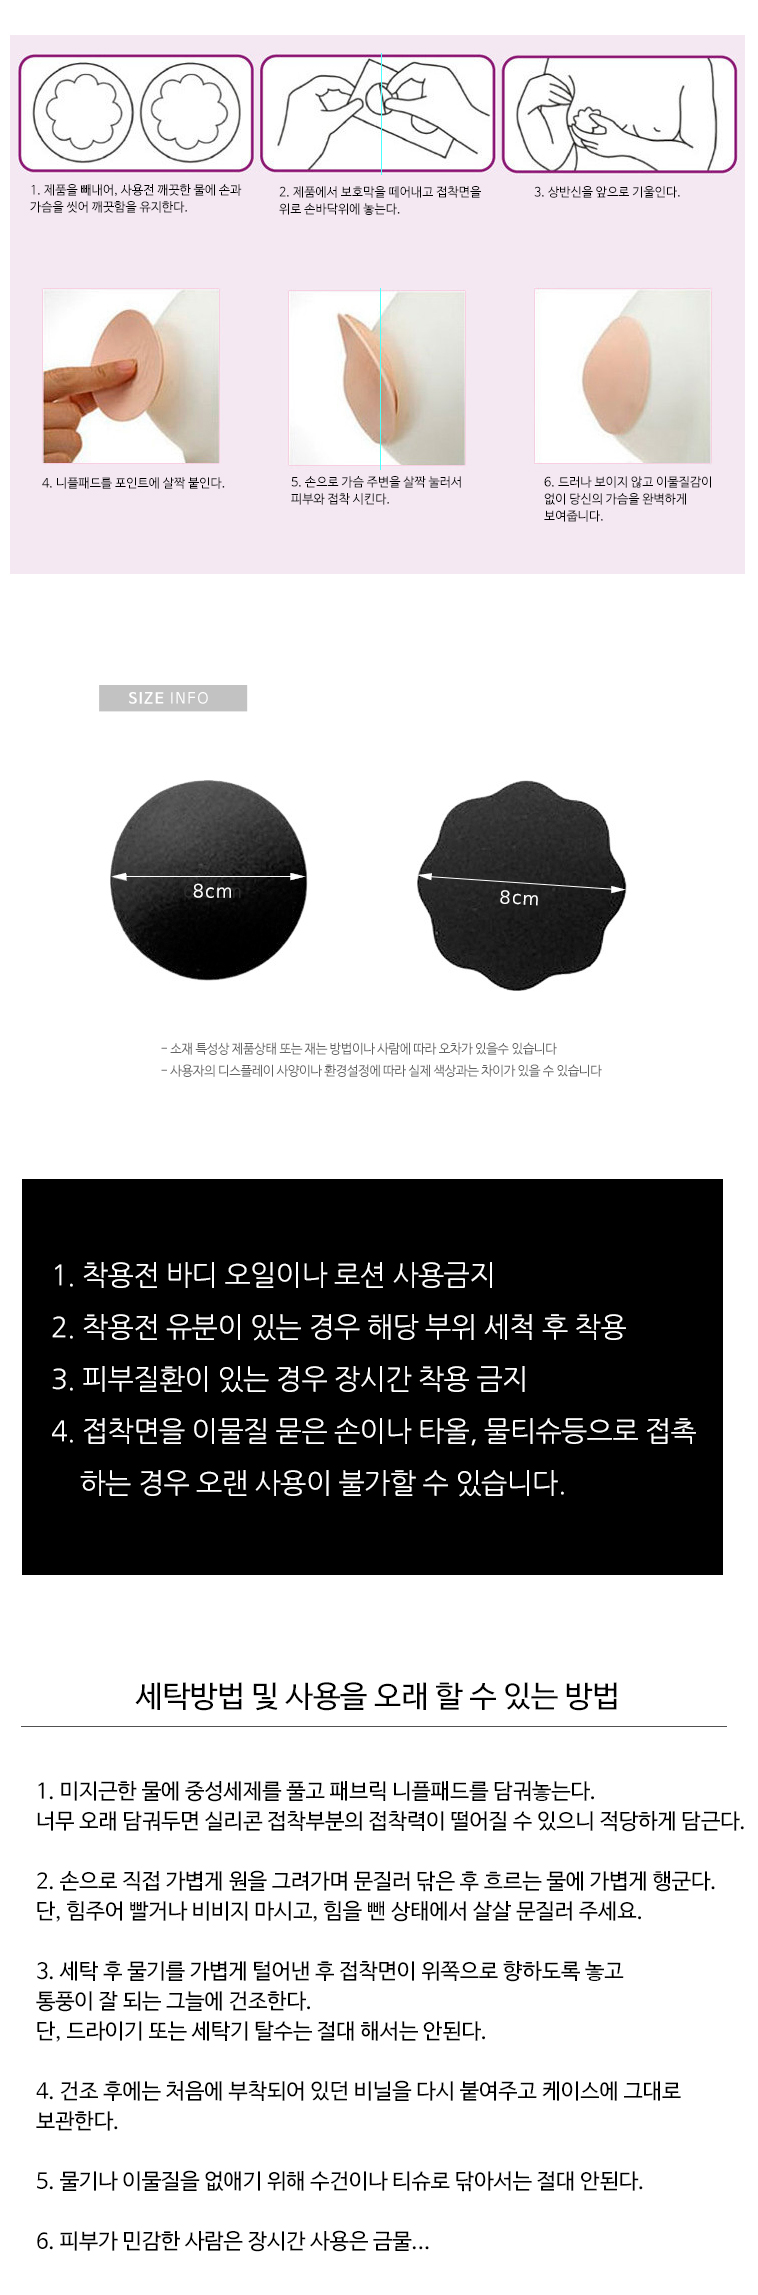 가슴유두비침도드라짐방지 실리콘패브릭2타입니플패드 - G마켓 모바일